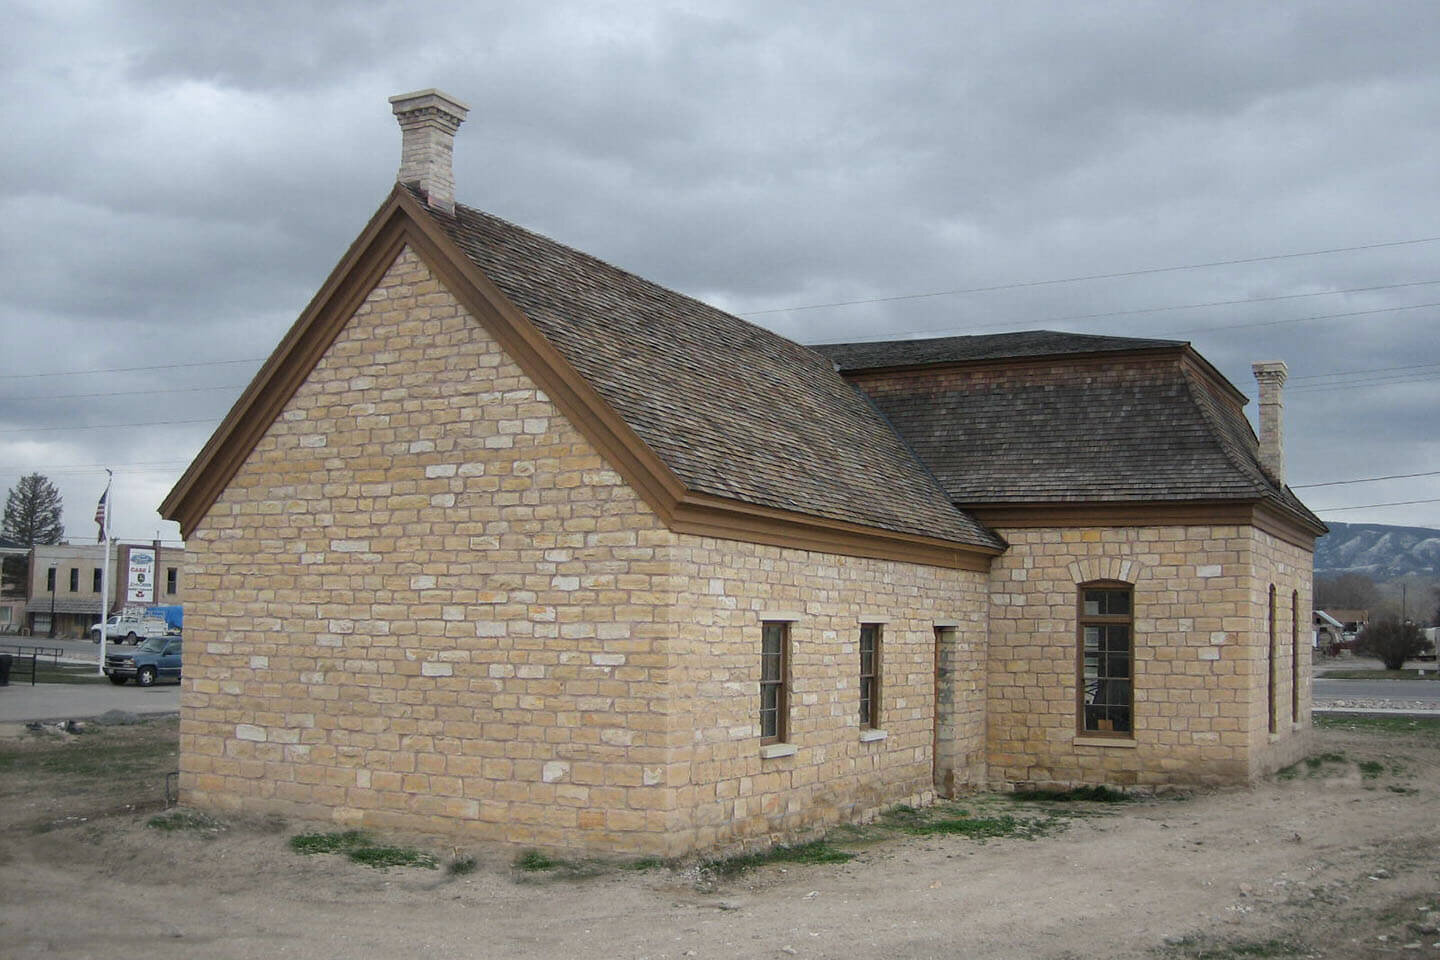 教堂用石灰石砖和瓦片屋顶建造